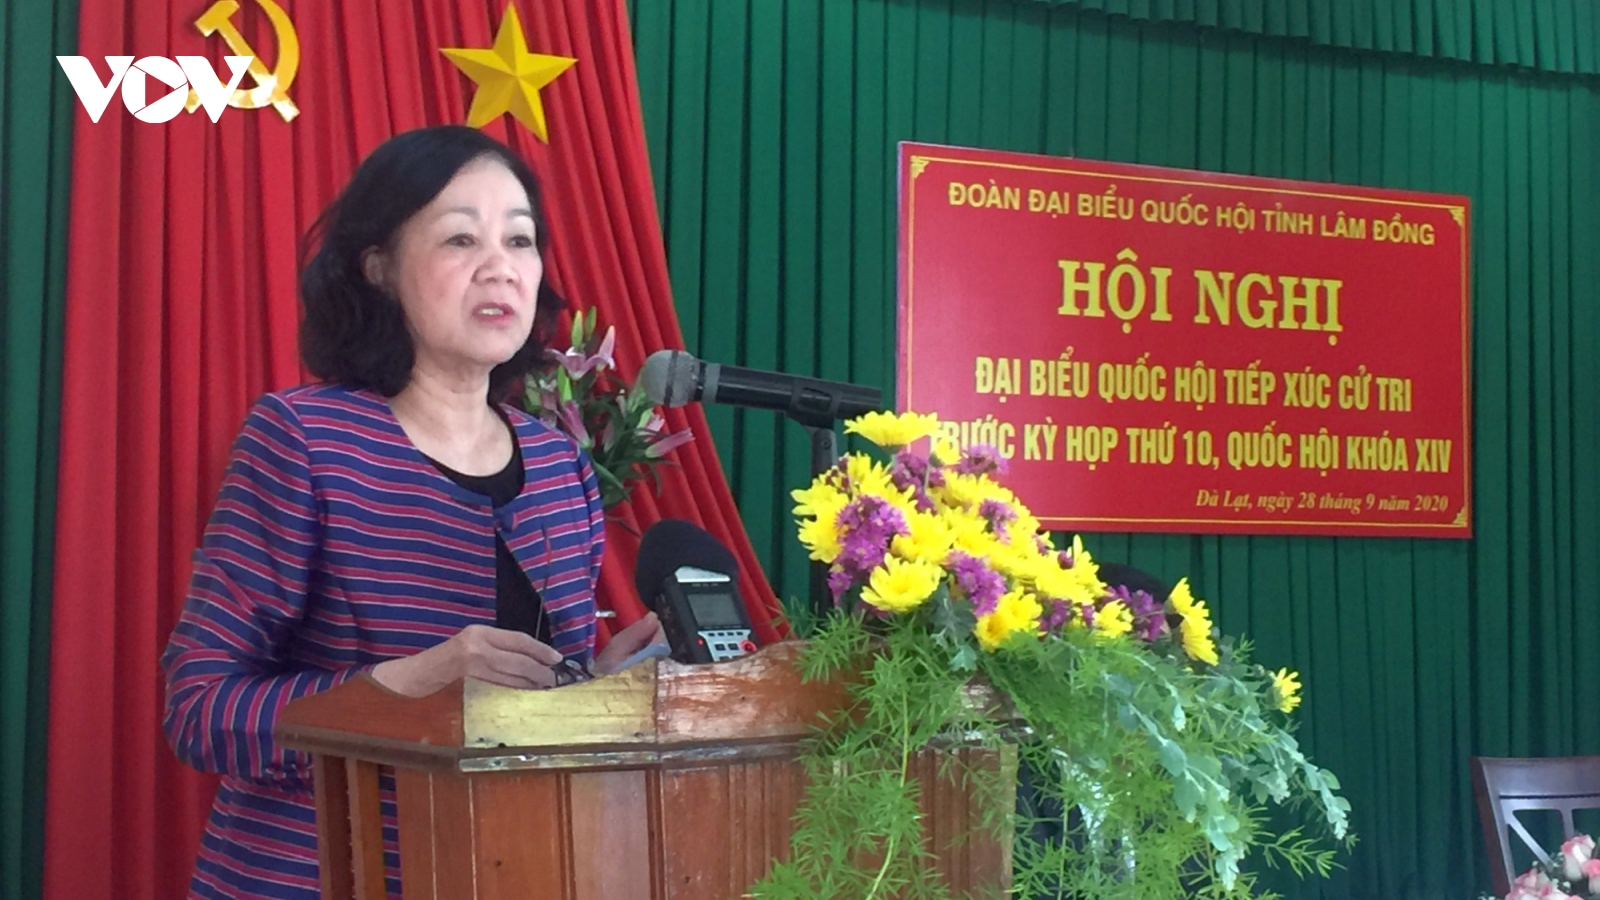 Trưởng ban dân vận Trung ương Trương Thị Mai tiếp xúc cử tri tại Lâm Đồng